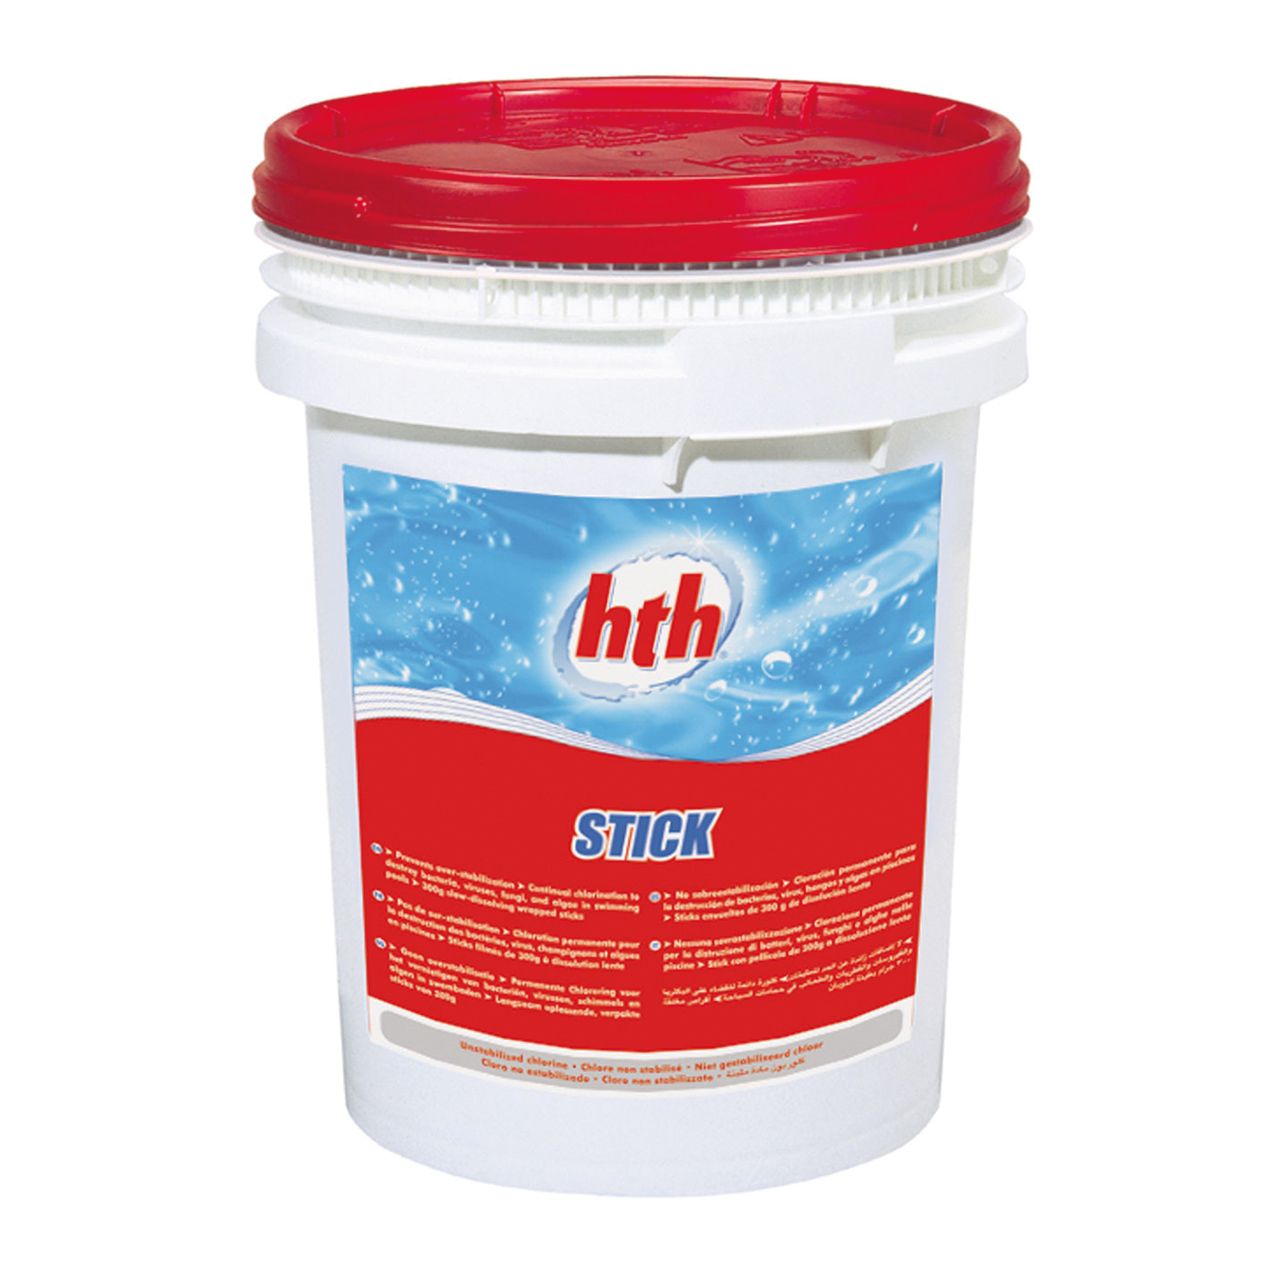 HTH Stick - anorganisches Chlor 4,5kg